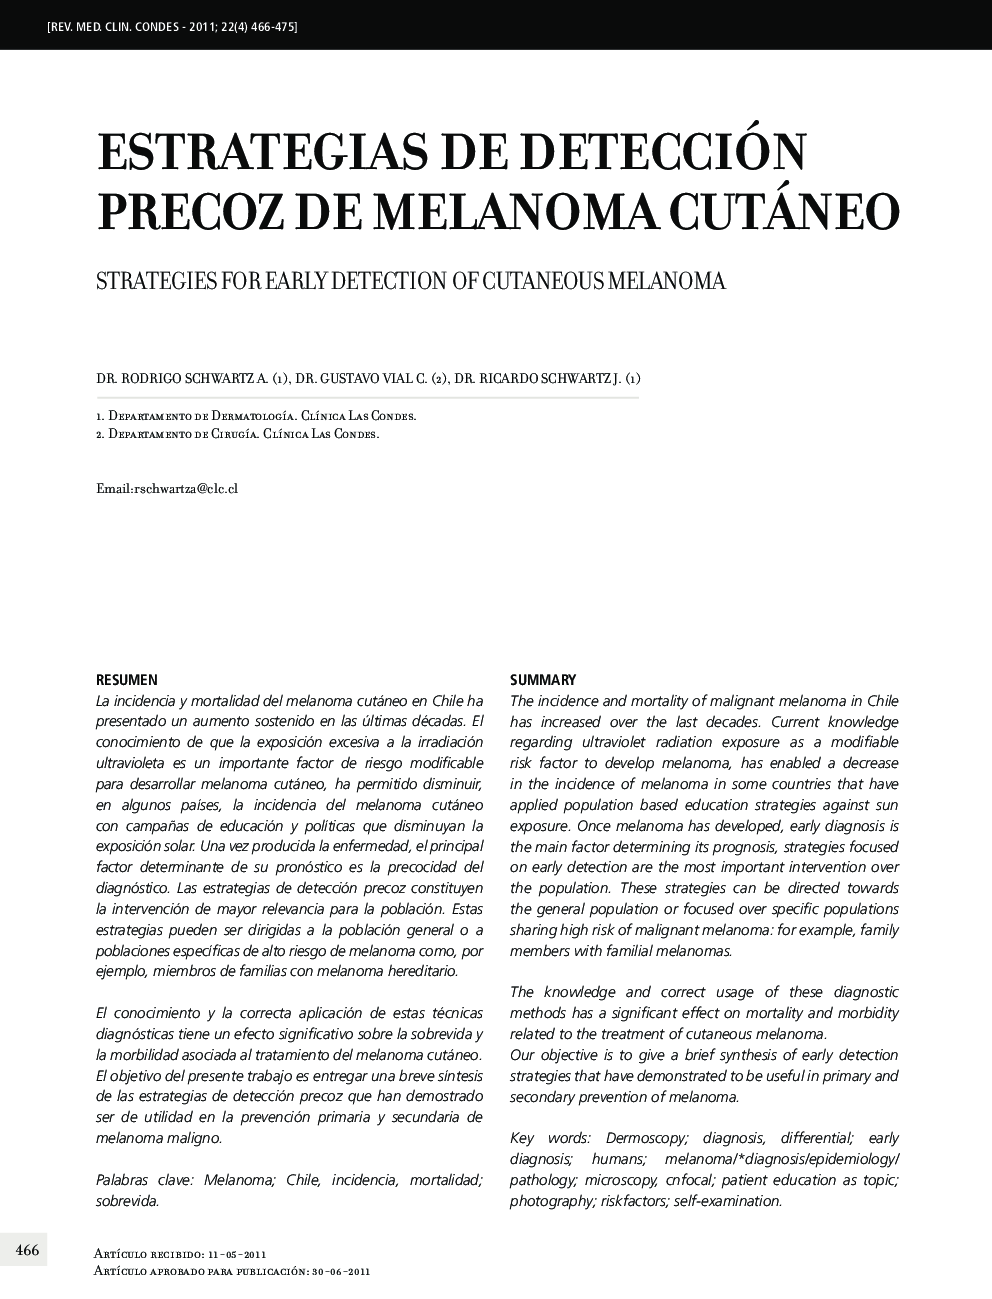 Estrategias de detección precoz de melanoma cutáneo